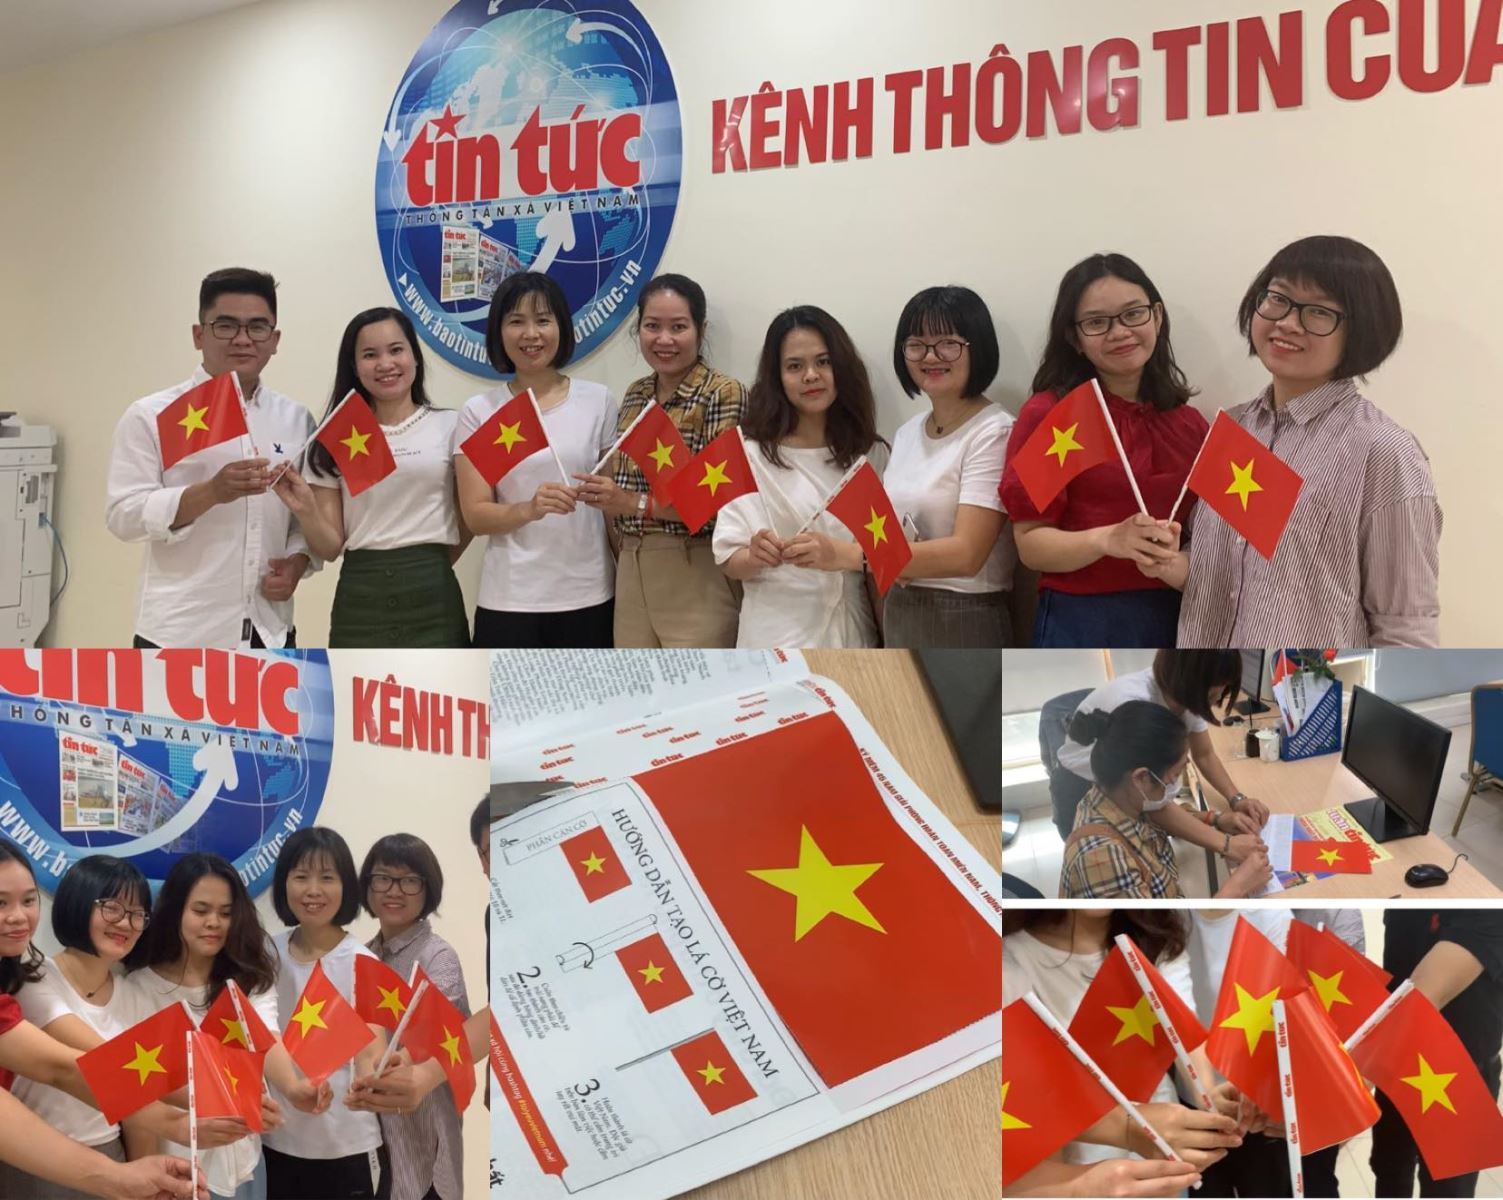 Cờ Việt Nam: Cờ Việt Nam - biểu tượng cao quý của tổ quốc ta, mang trong mình nhiều giá trị lịch sử và ý nghĩa tinh thần. Hãy cùng chiêm ngưỡng hình ảnh của cờ Việt Nam được vẽ nên một cách đầy ý nghĩa trên nền vải đỏ tươi của nước ta.